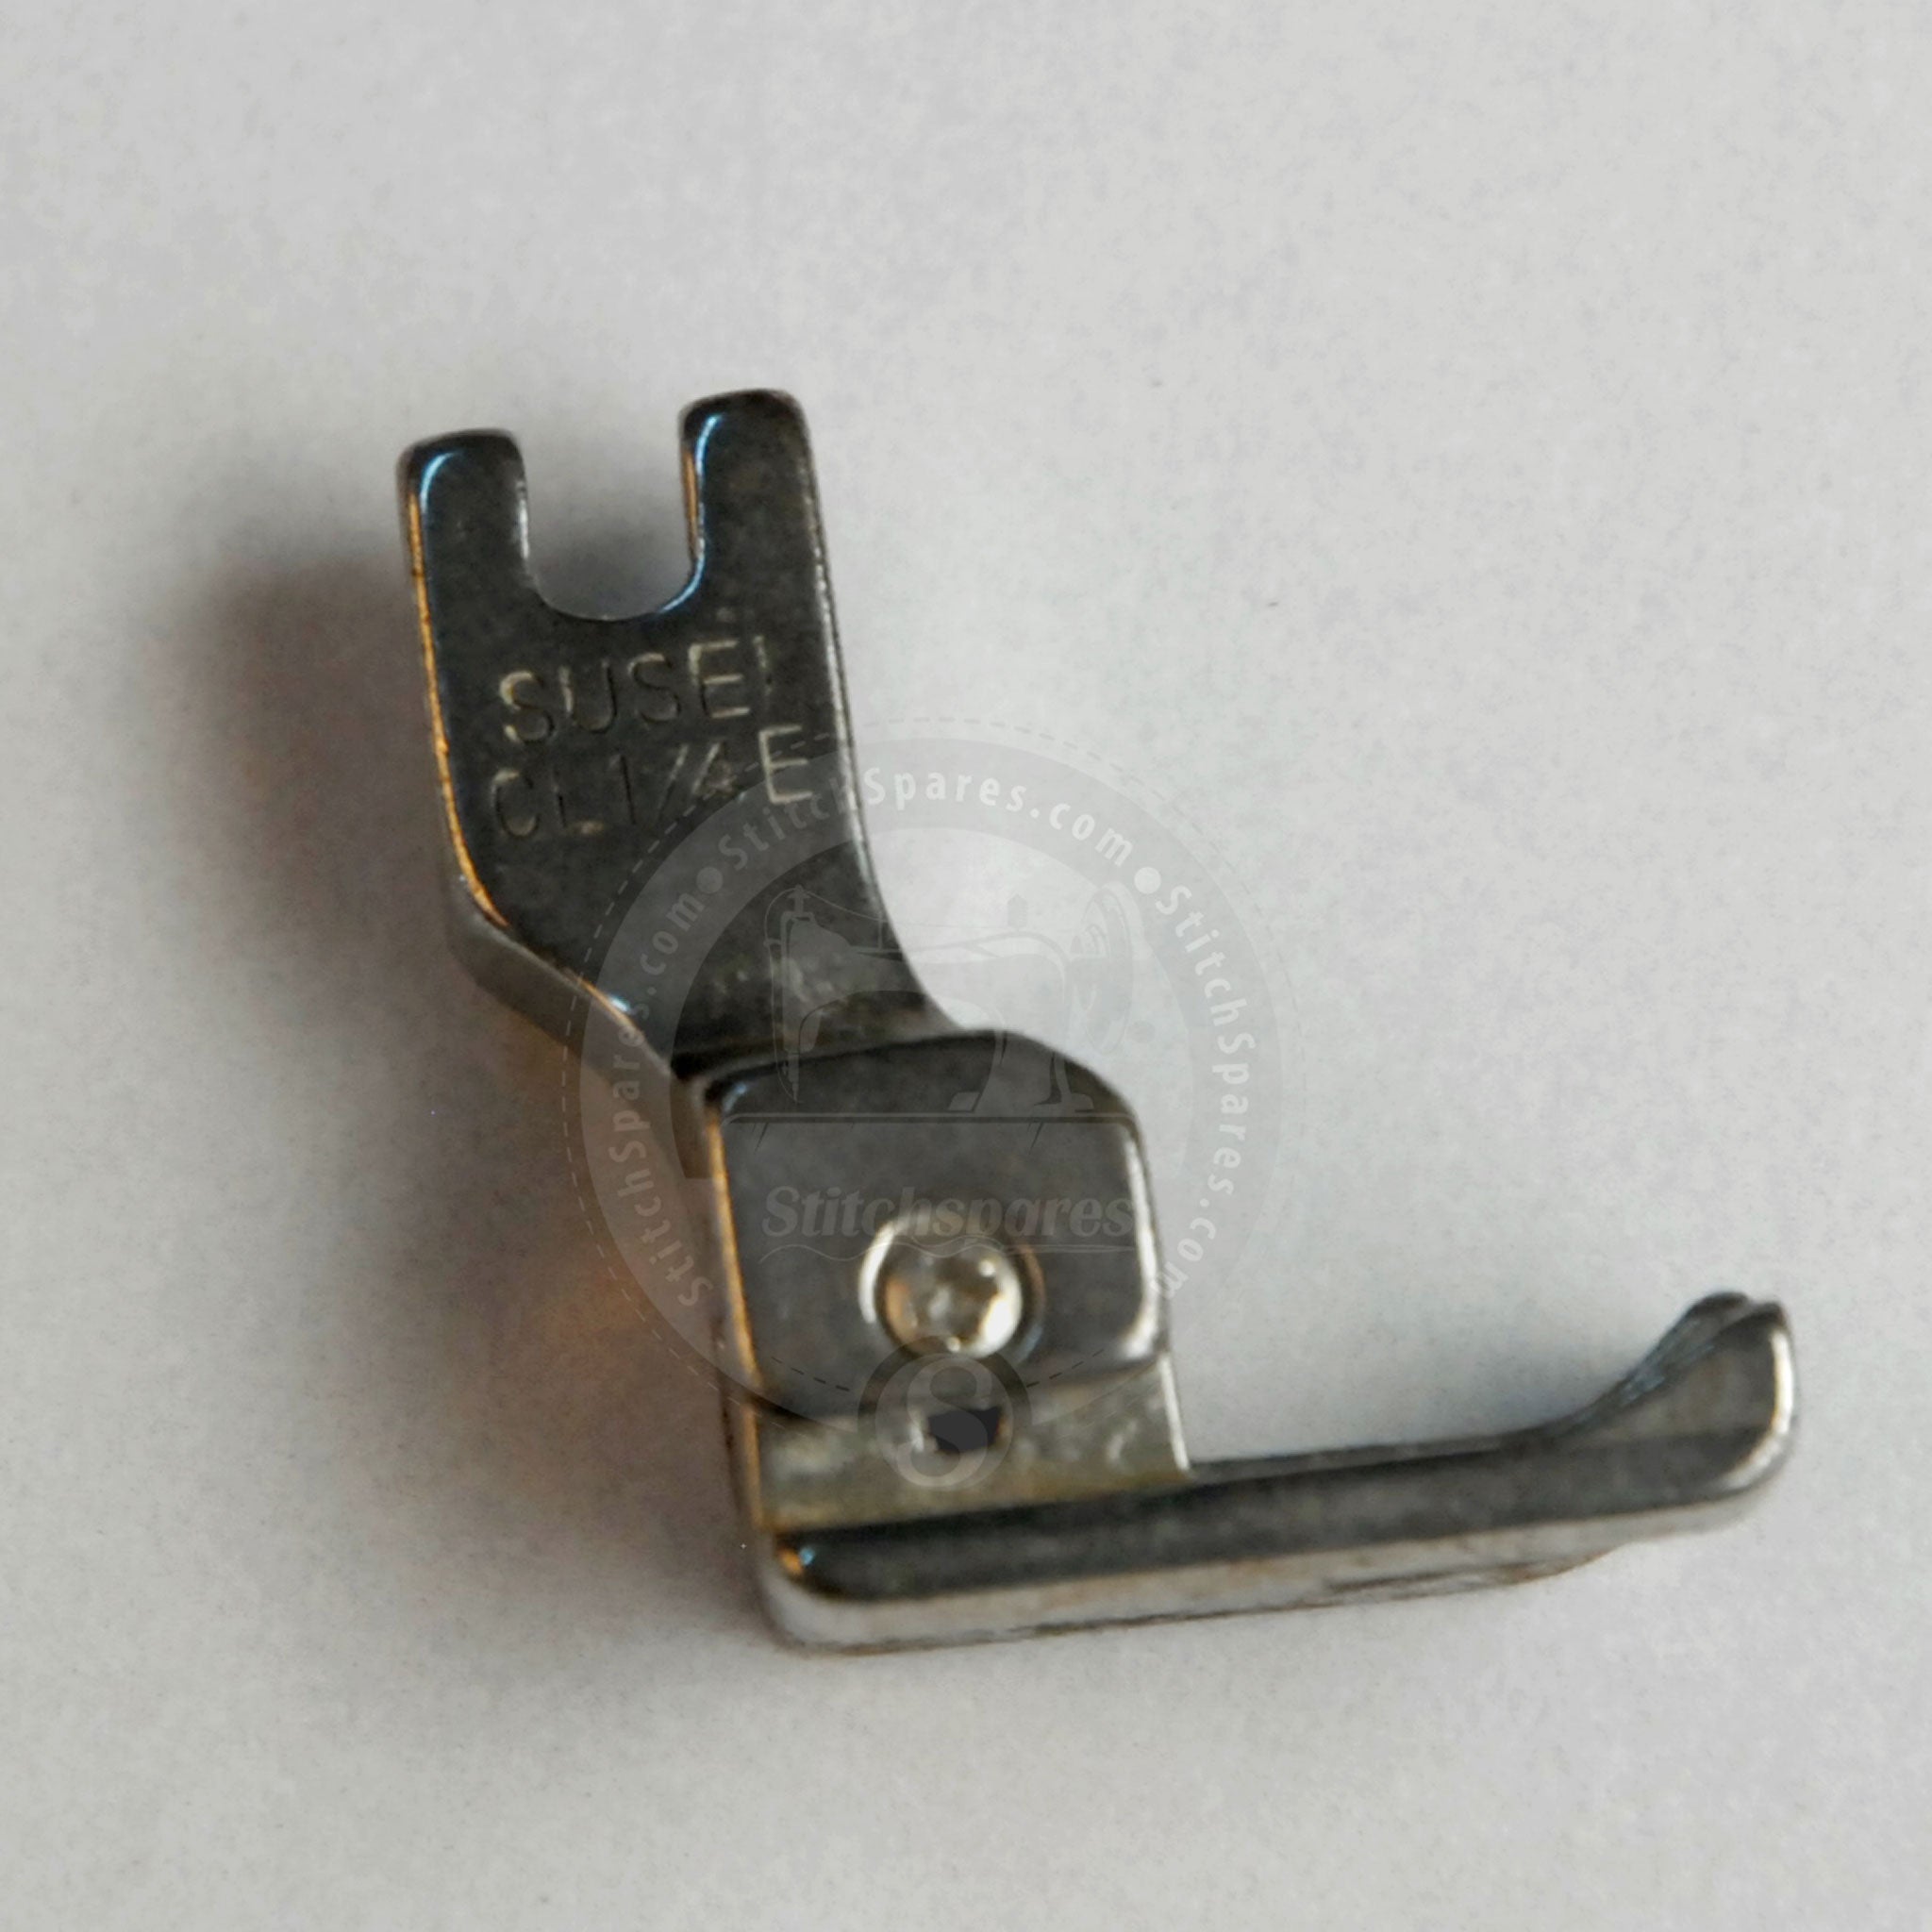 Máquina de coser de una sola aguja con prensatelas en pulgadas CL 1-4E